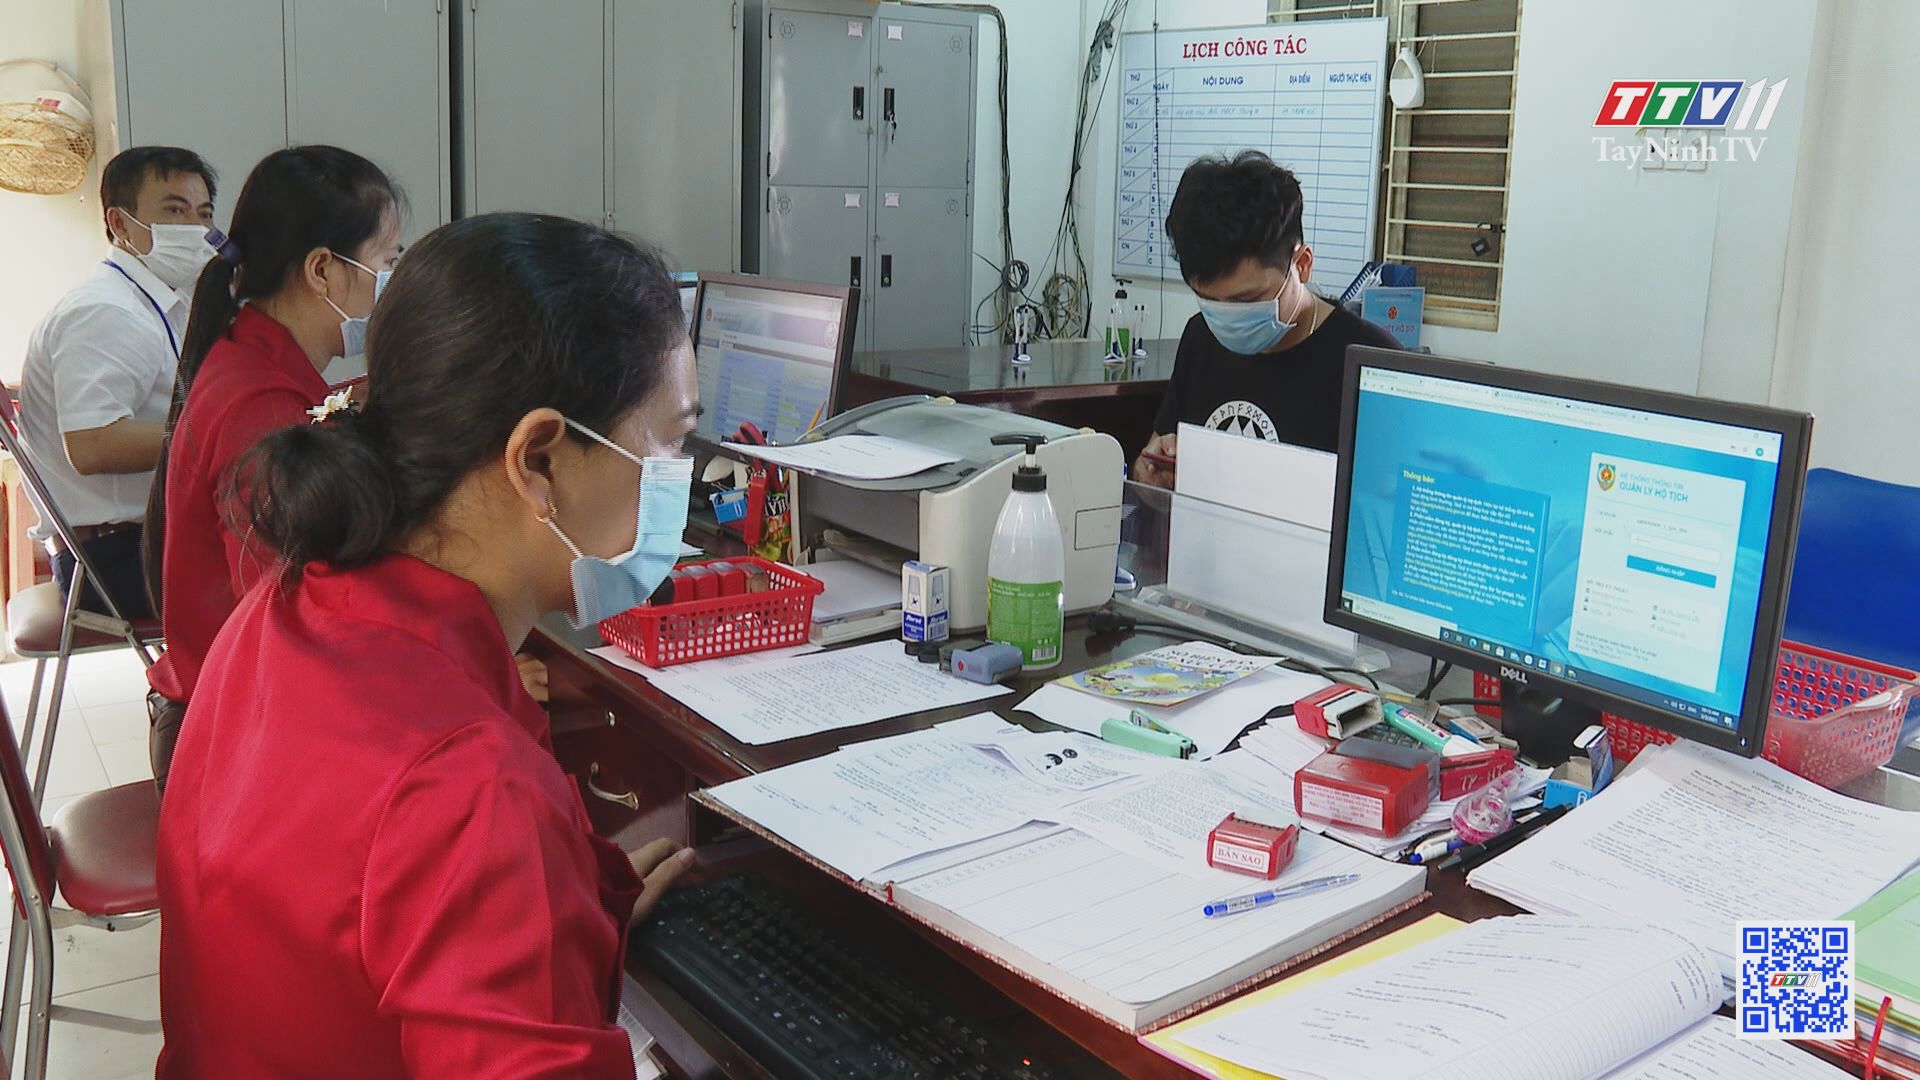 Tây Ninh đẩy mạnh việc thanh toán trực tuyến nghĩa vụ tài chính về đất đai | CHÍNH SÁCH ĐẤT ĐAI | TayNinhTV